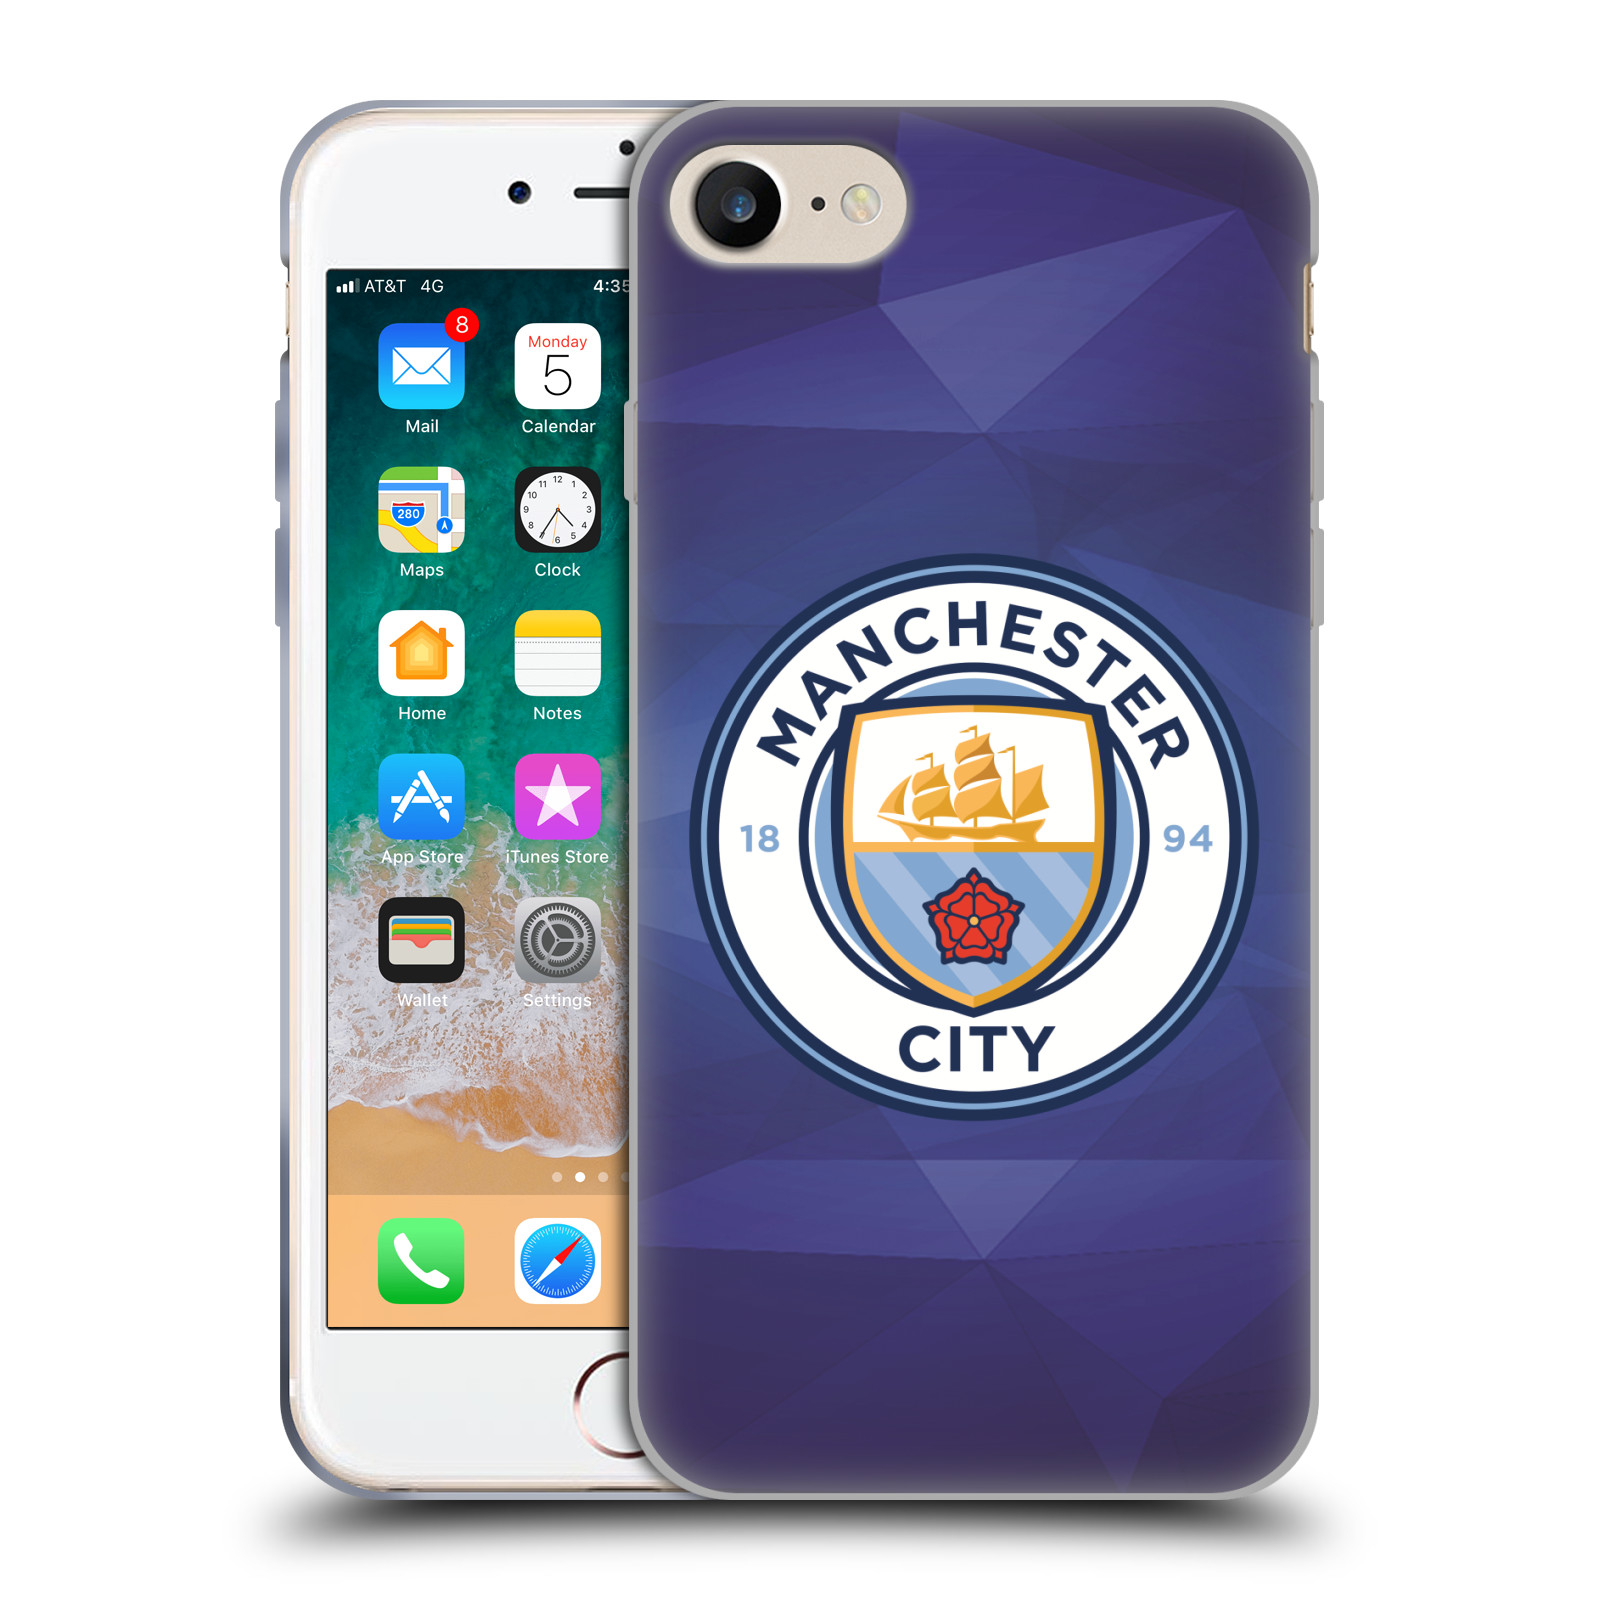 Silikonové pouzdro na mobil Apple iPhone 8 - Head Case - Manchester City FC - Modré nové logo (Silikonový kryt či obal na mobilní telefon Apple iPhone 8 s motivem Manchester City FC - Modré nové logo)